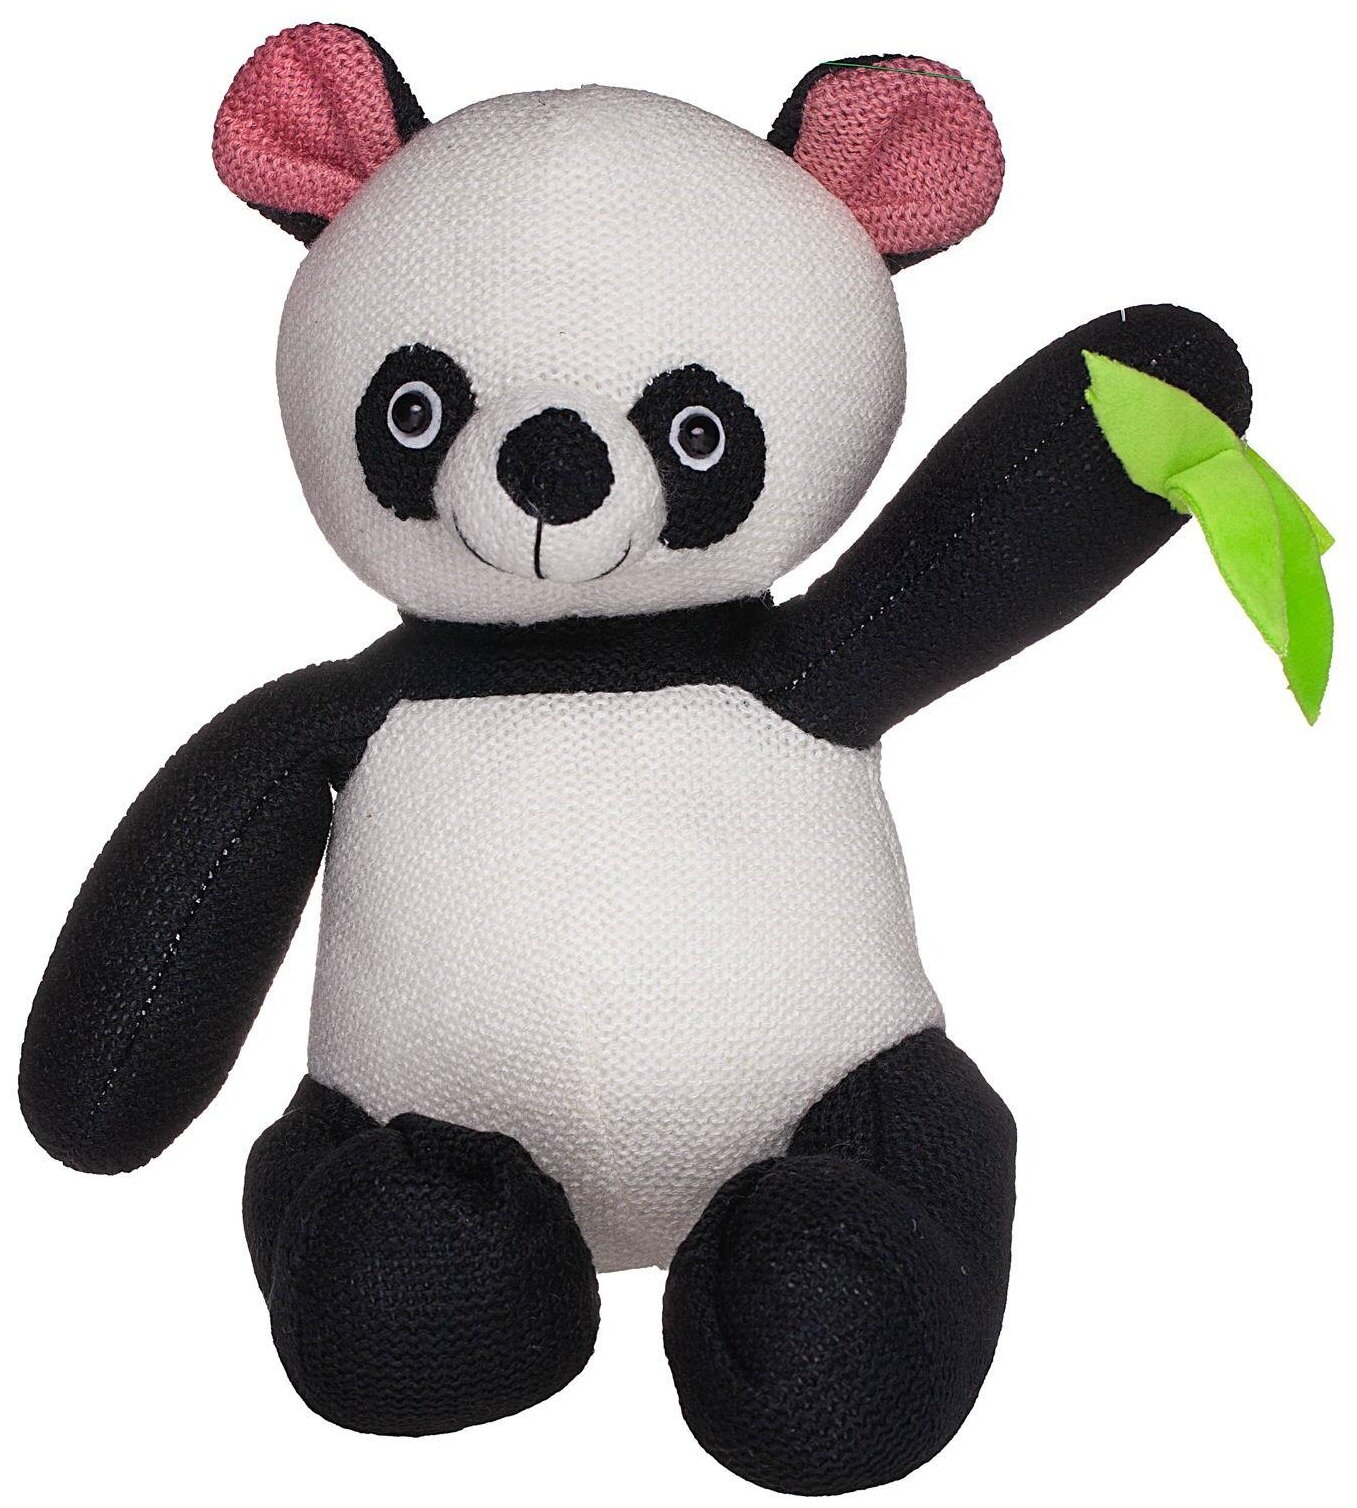 Мягкая игрушка Abtoys Knitted Панда вязаная, 21 см, черно-белый